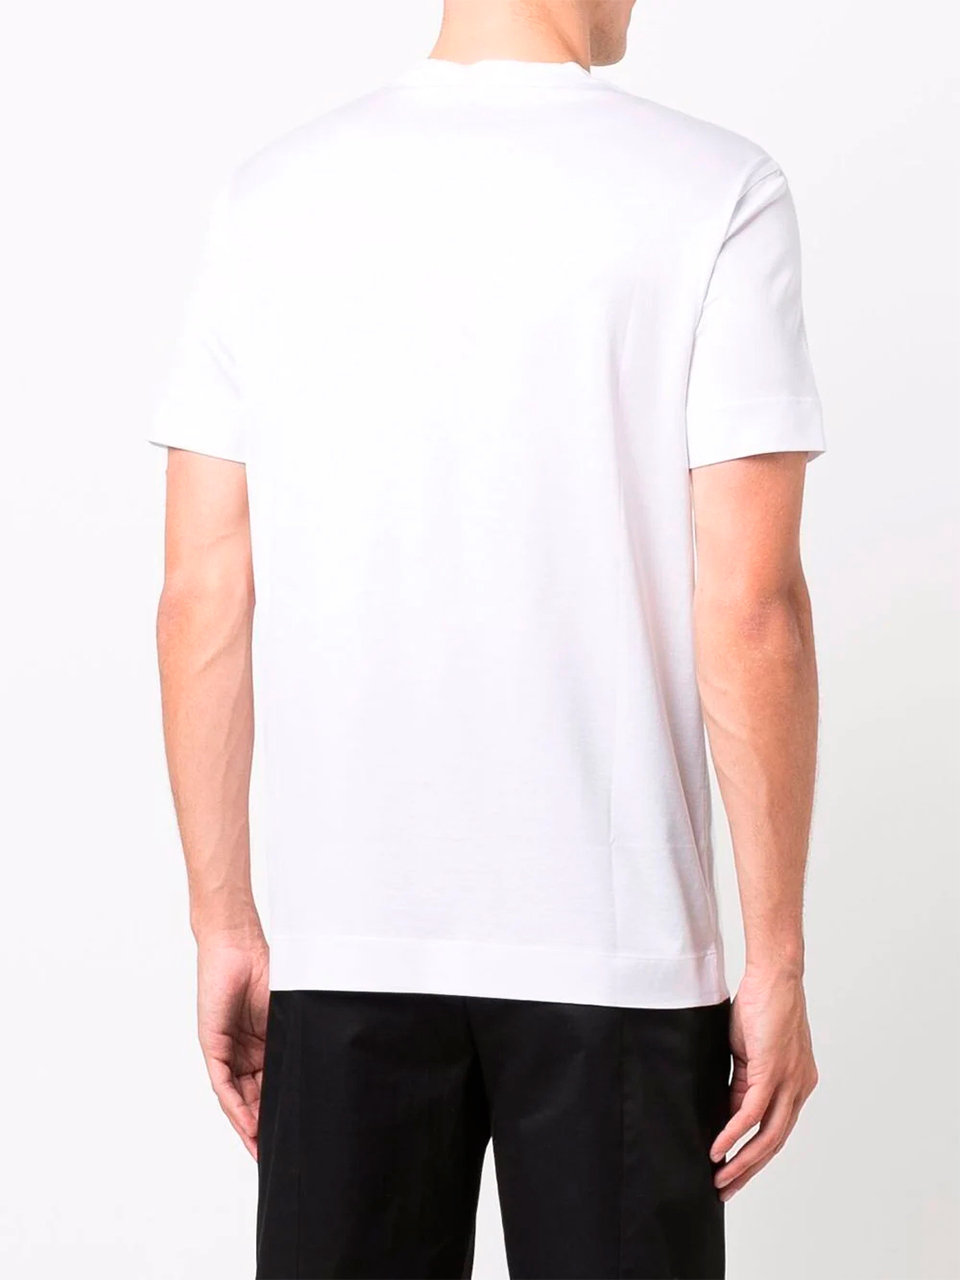 Imagem de: Camiseta Emporio Armani Branca com Estampa Pequena